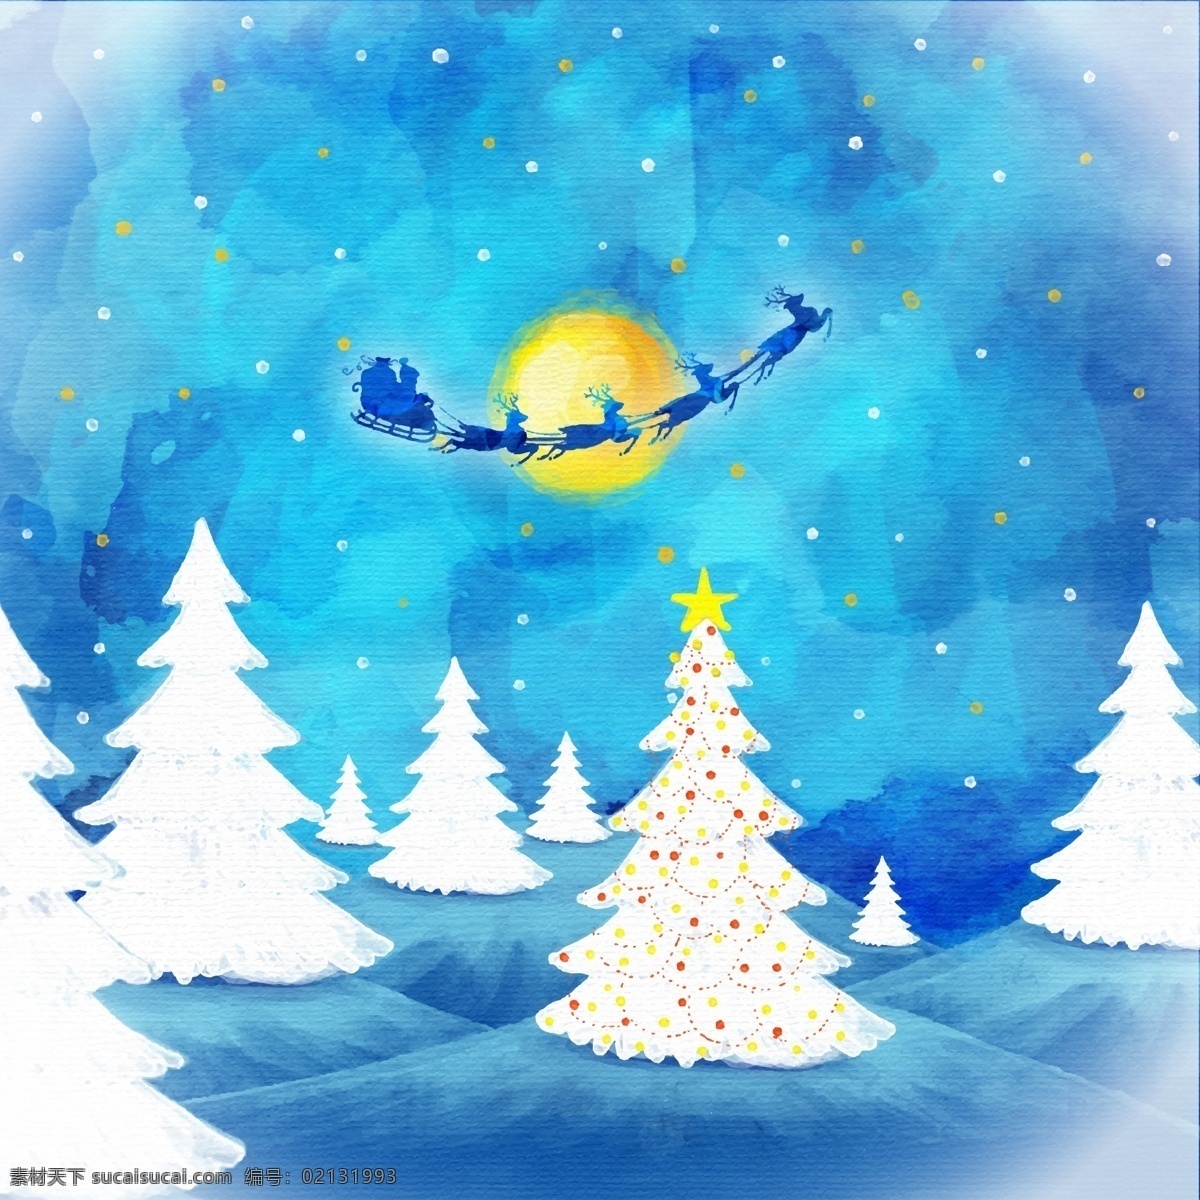 圣诞水墨麋鹿 创意圣诞雪橇 圣诞老人卡片 矢量素材 月亮 星星 树木 圣诞节 麋鹿 礼包 夜晚 创意 圣诞雪橇 圣诞老人 剪贴画精美 装饰 时尚背景 酷炫 潮流 背景 矢量图 背景图 底图 包装设计 设计元素